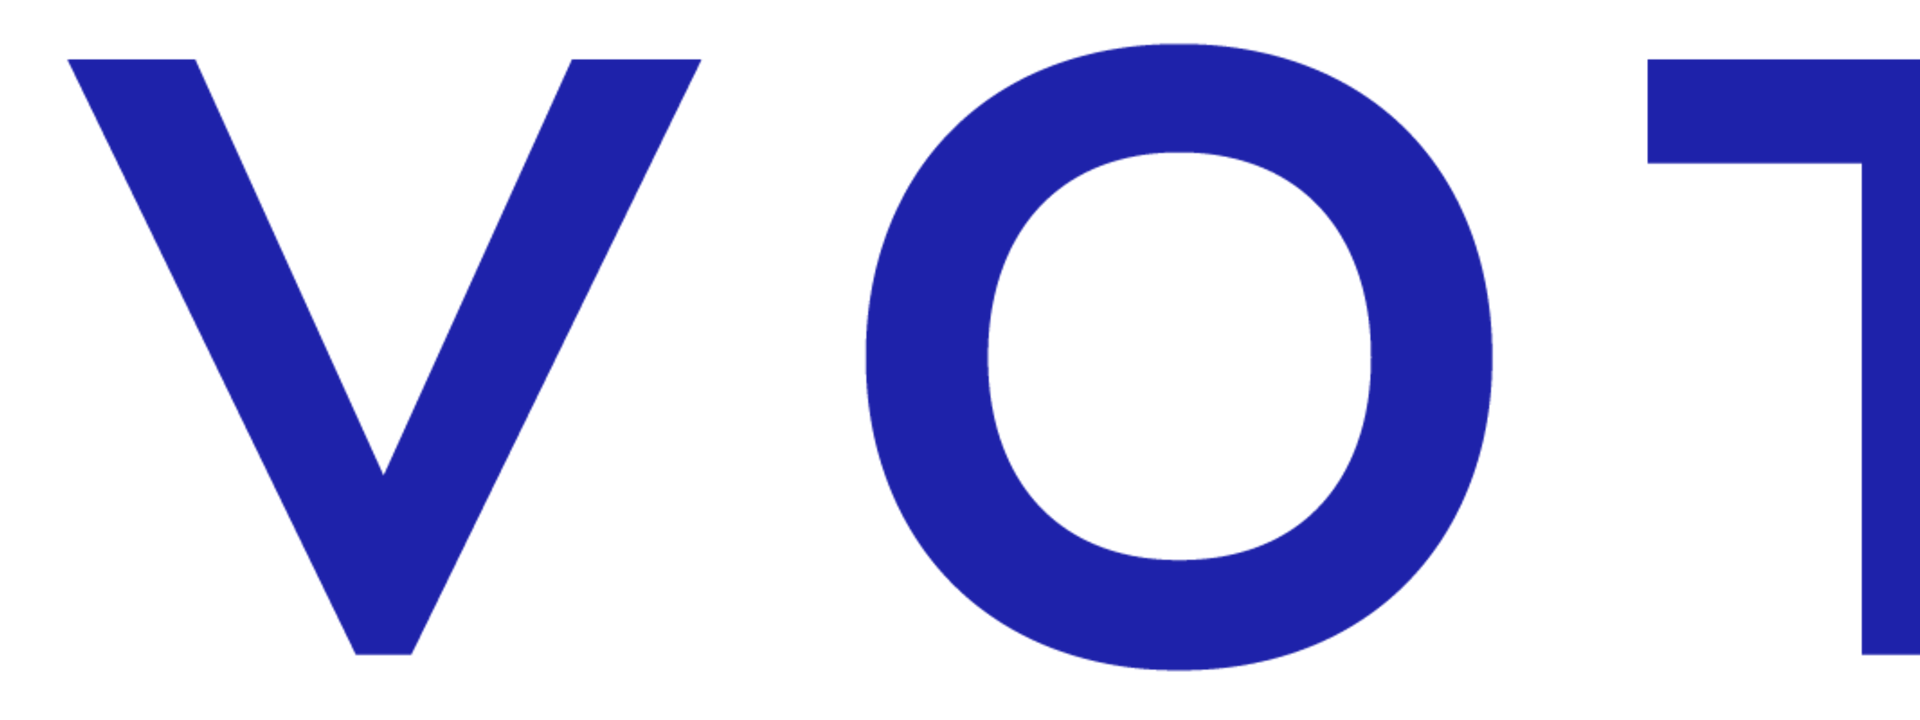 novotel_logo_2019_rvb_3.png